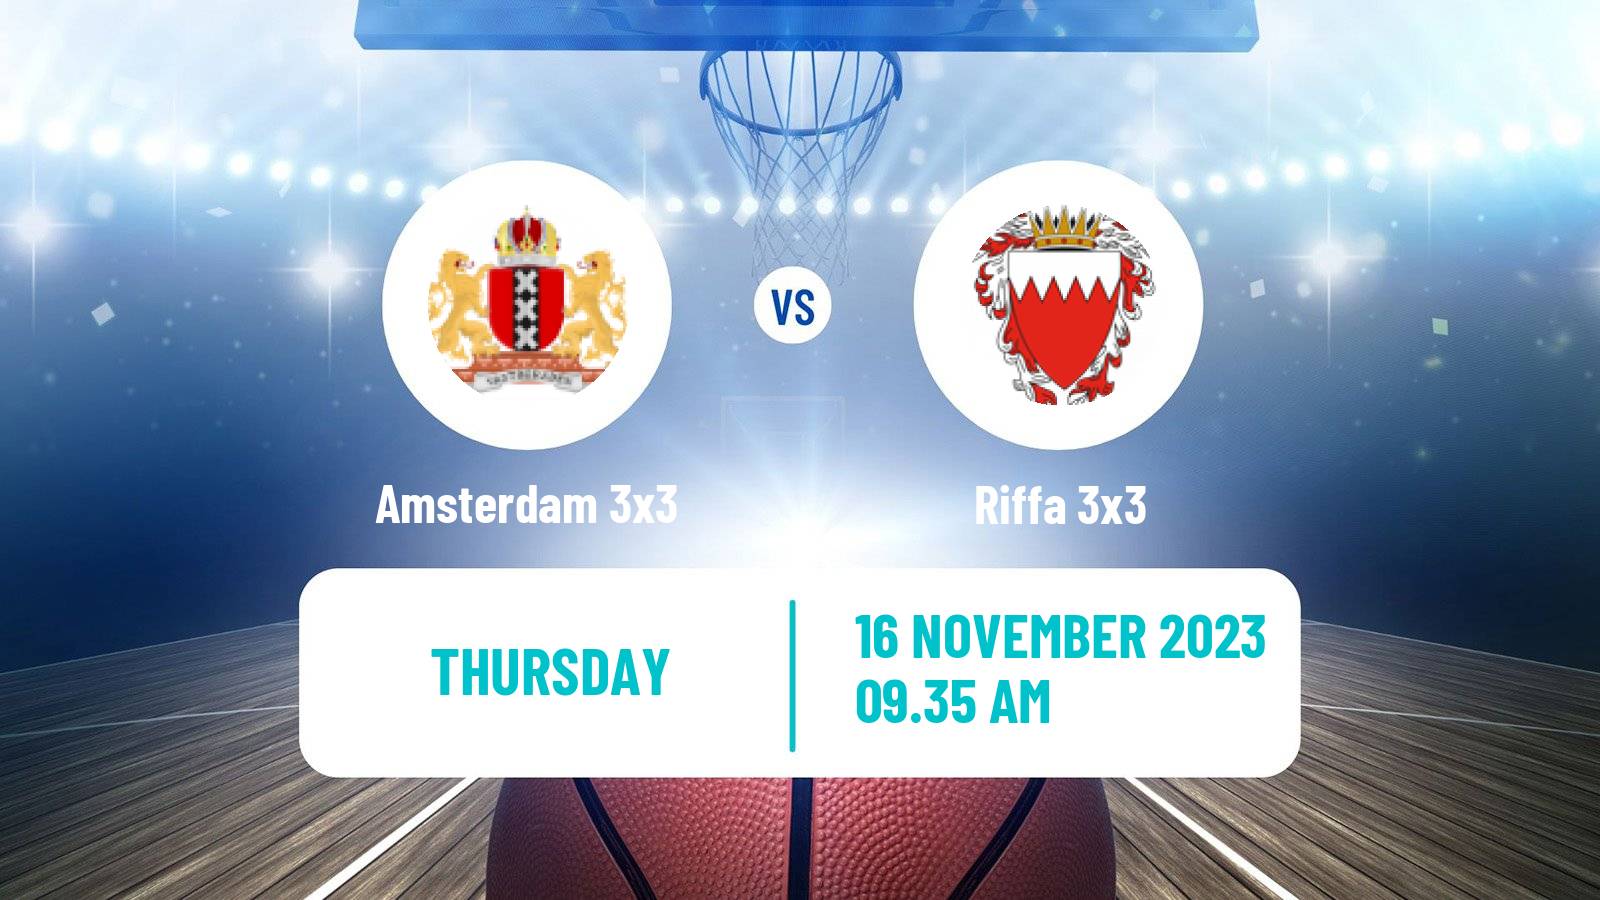 Basketball World Tour Manama 3x3 Amsterdam 3x3 - Riffa 3x3